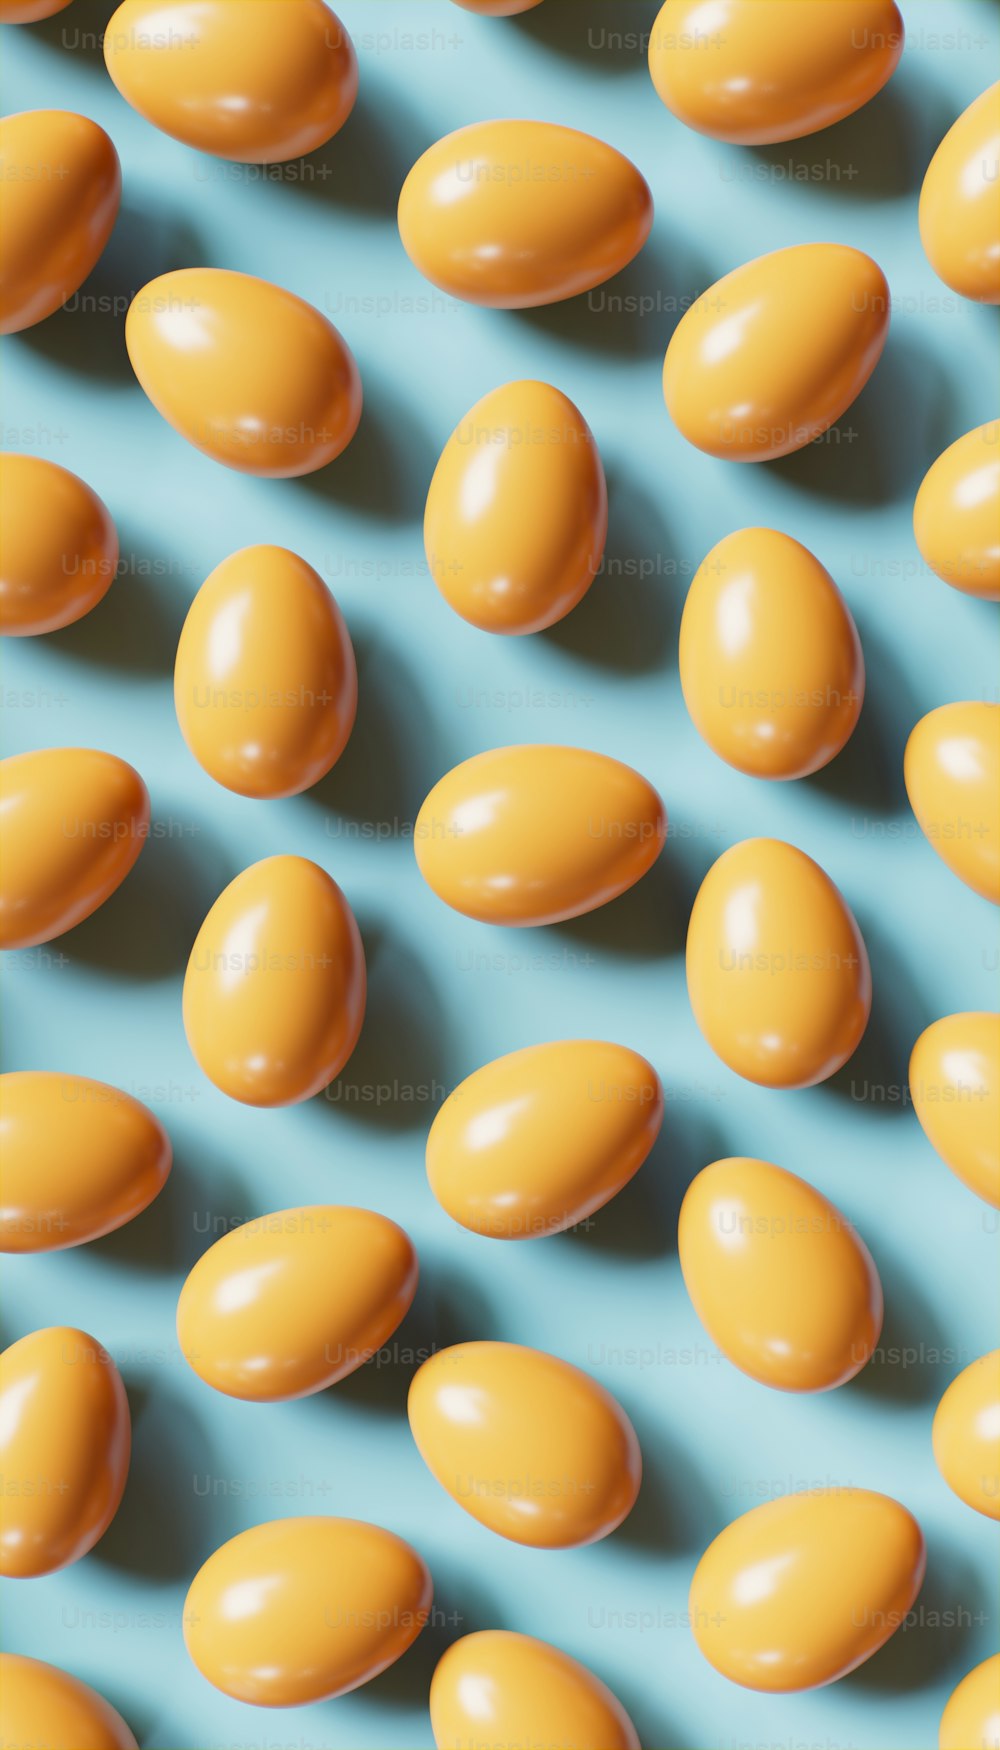 ein Bündel gelber Eier, die auf einer blauen Oberfläche sitzen